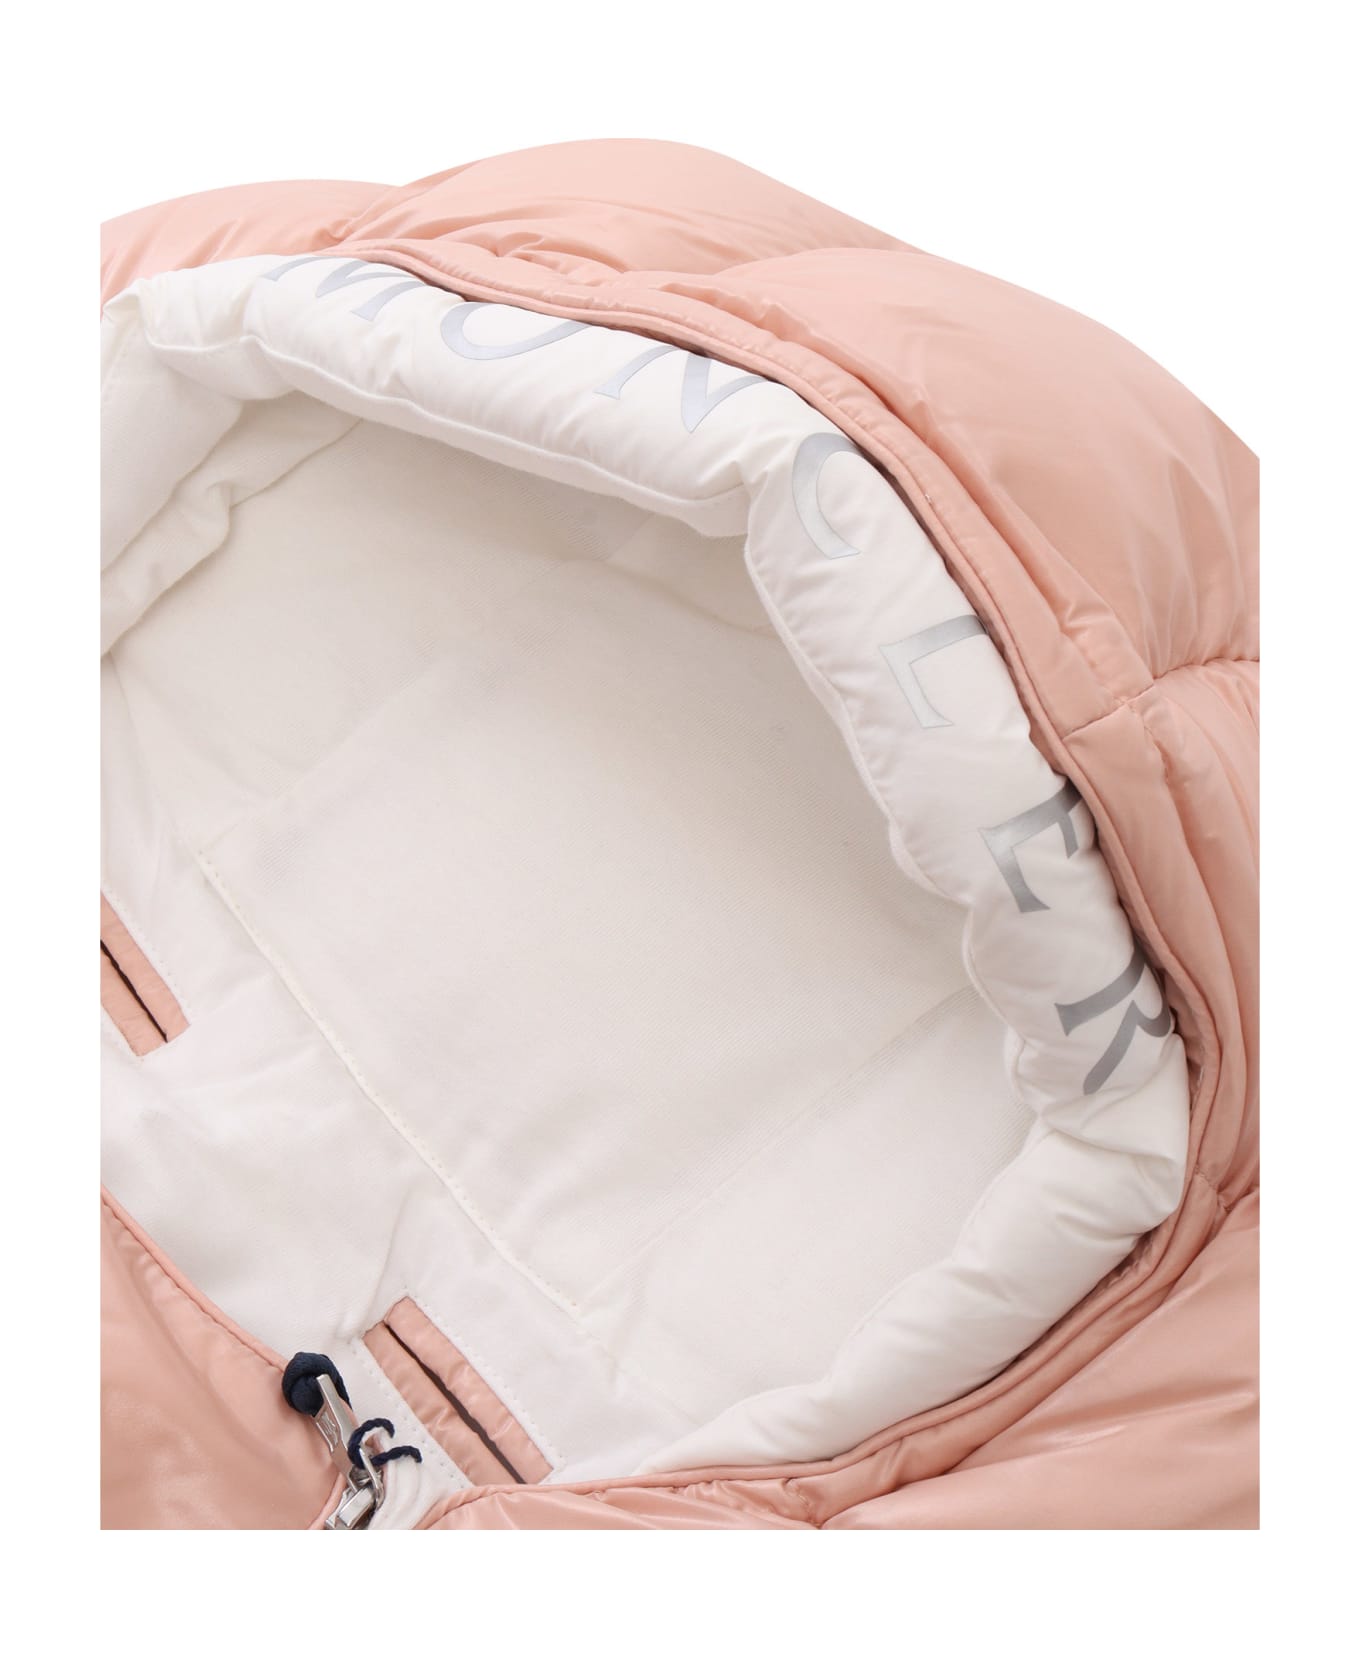 Moncler Padded Sleeping Bag - PINK